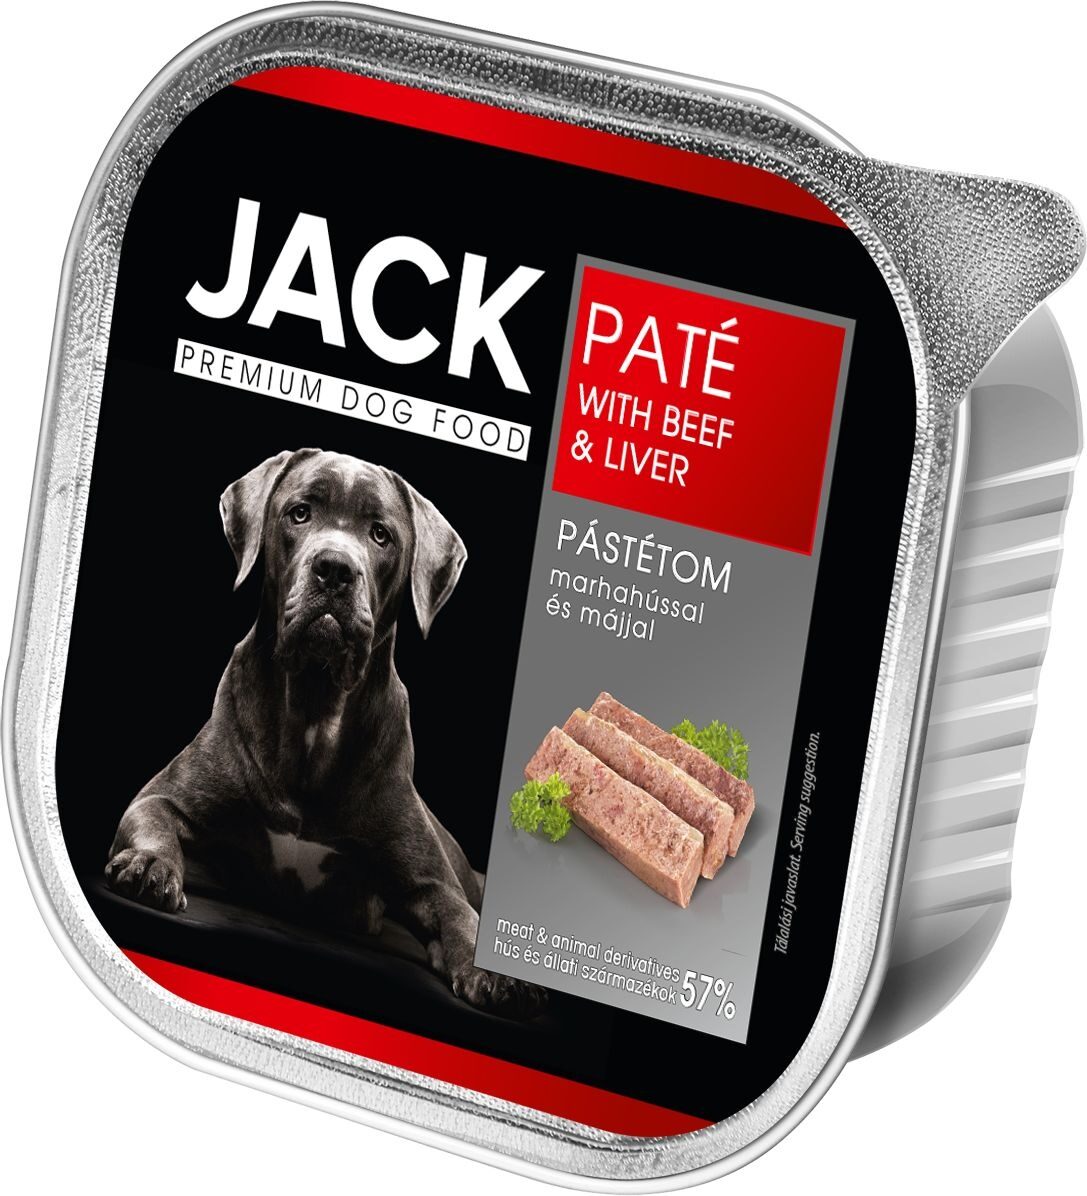 Jack beef paté with liver 150g - Product - en